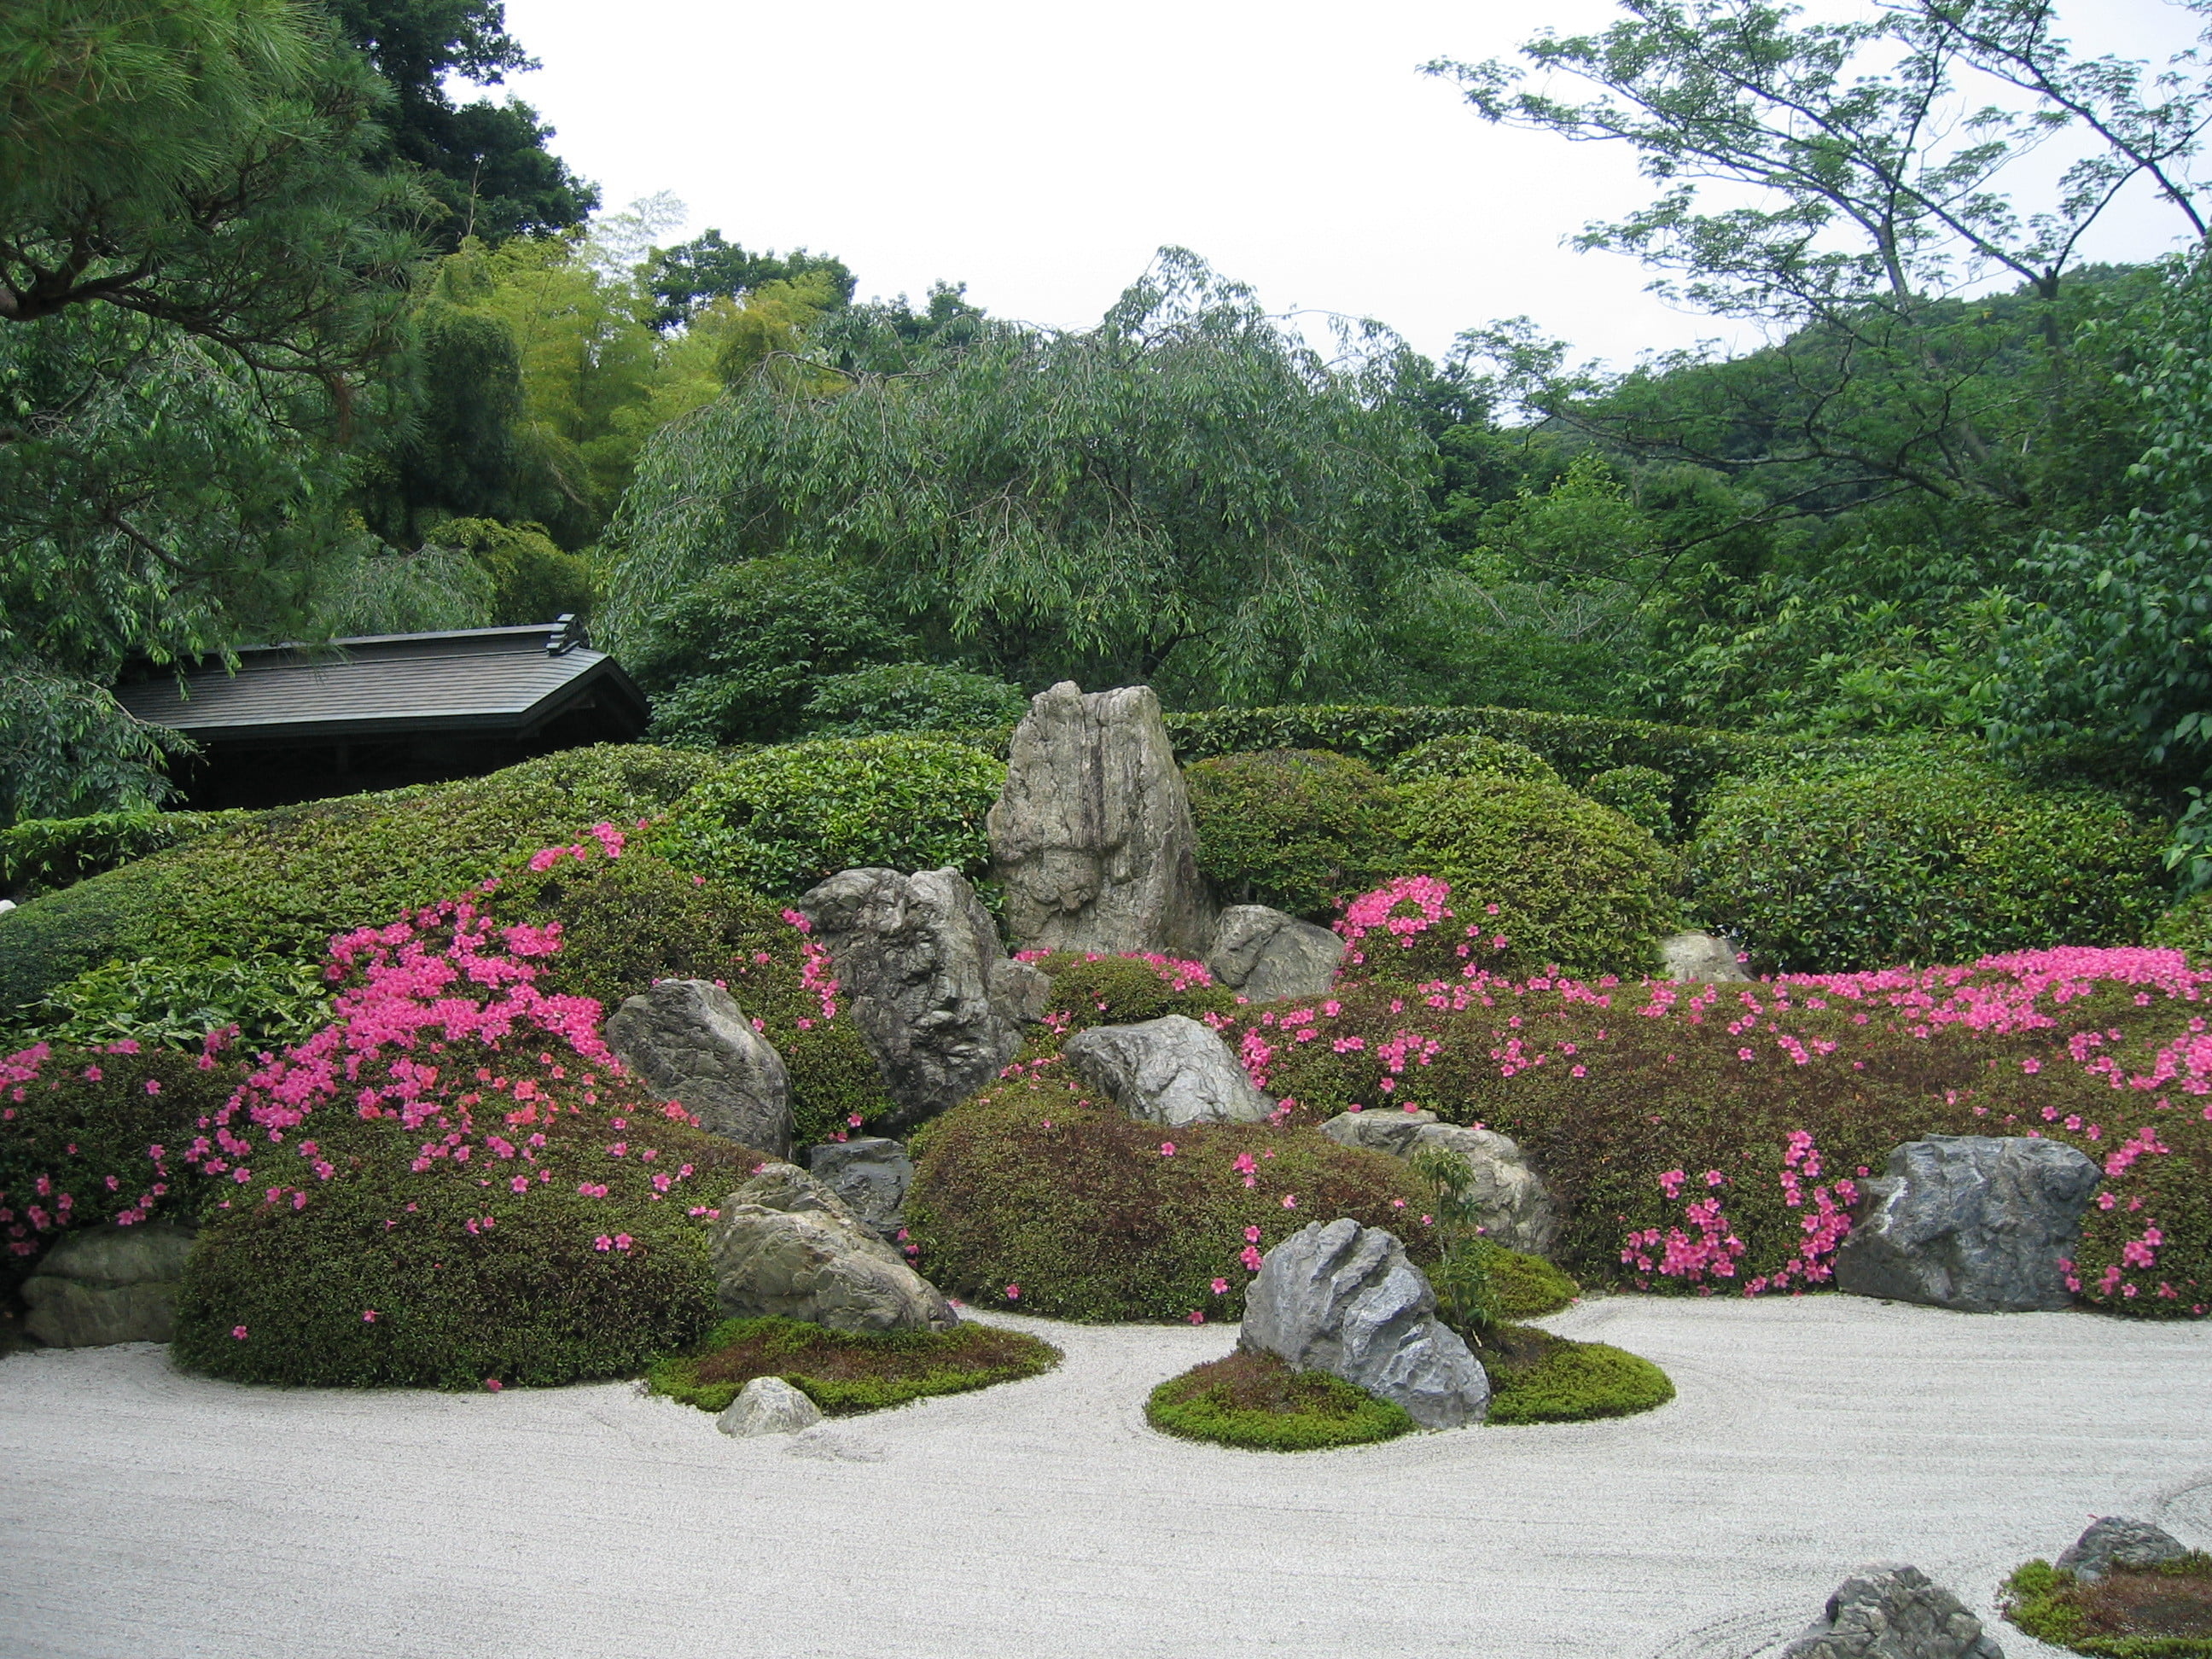 Забронировать столик в японском саду. Японский Каменистый сад. Сад хиранива в Японии. Каменный сад японский сад. Японский сад Айвазовского камни.